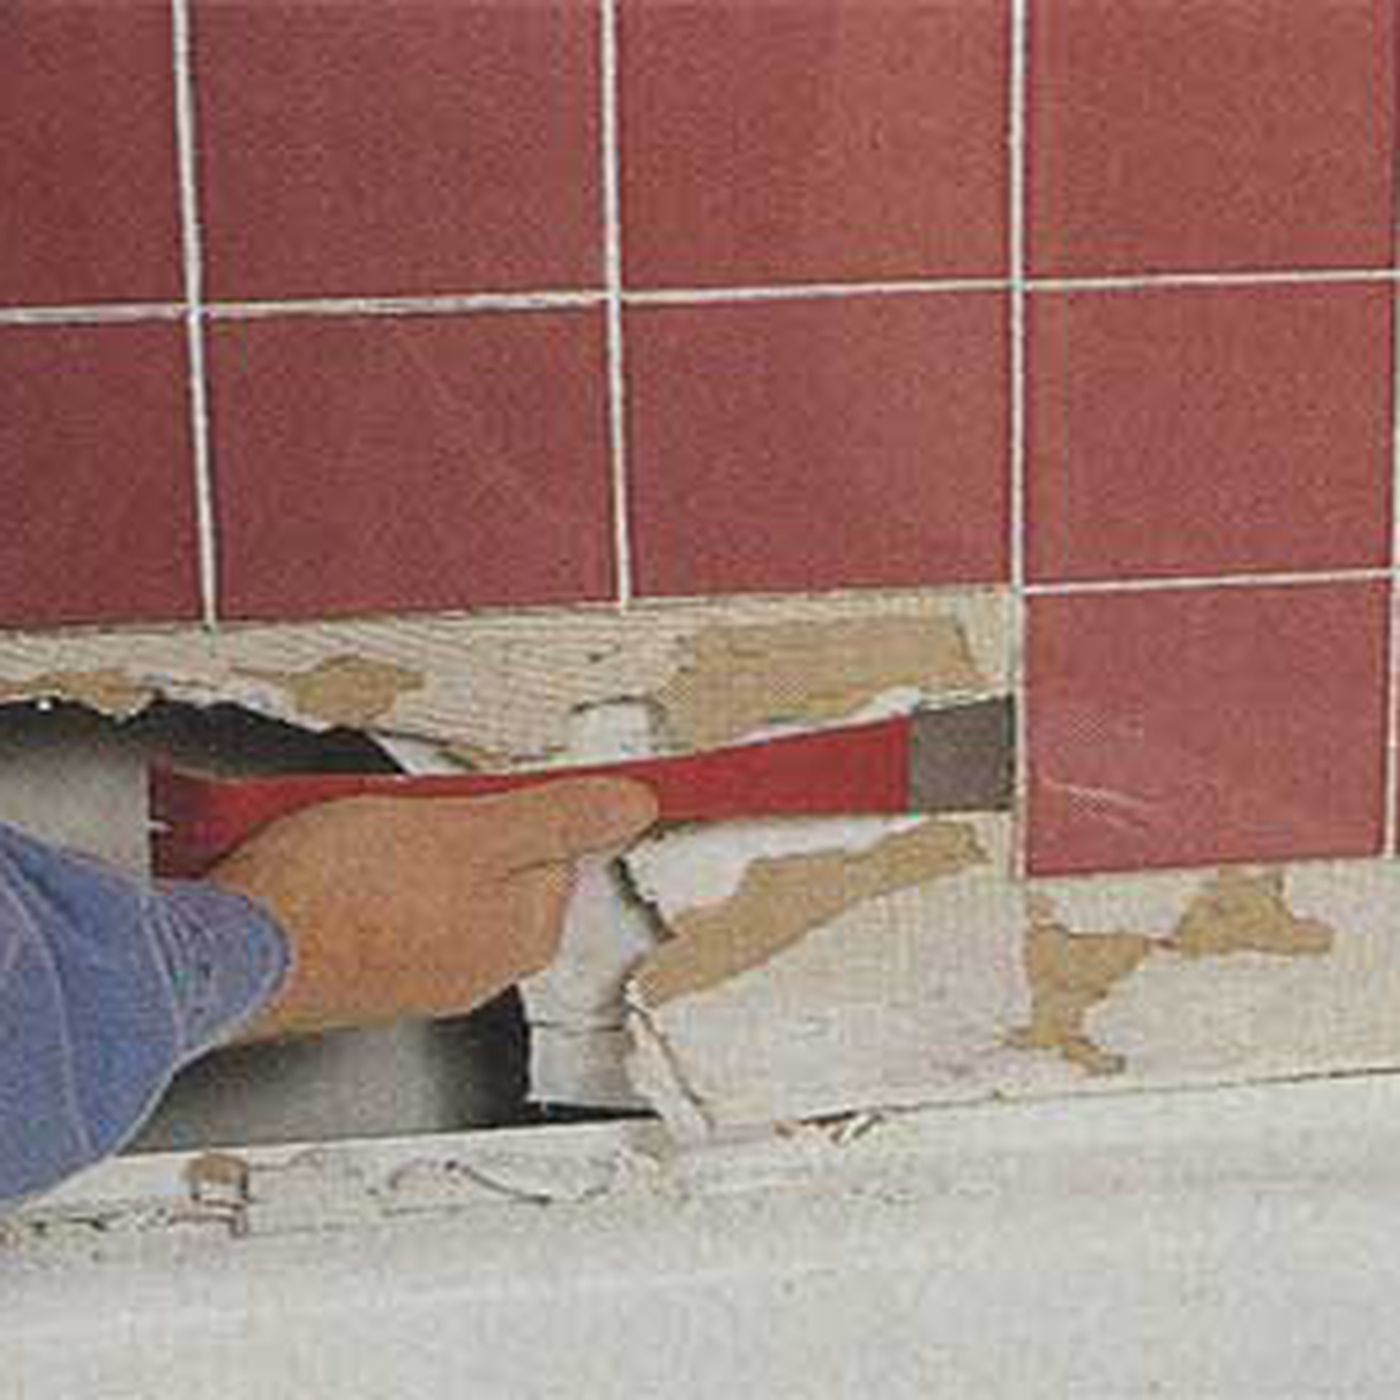 Mỹ: Dỡ tường toilet nhà thờ, choáng với thứ từ bên trong xổ ra - 1